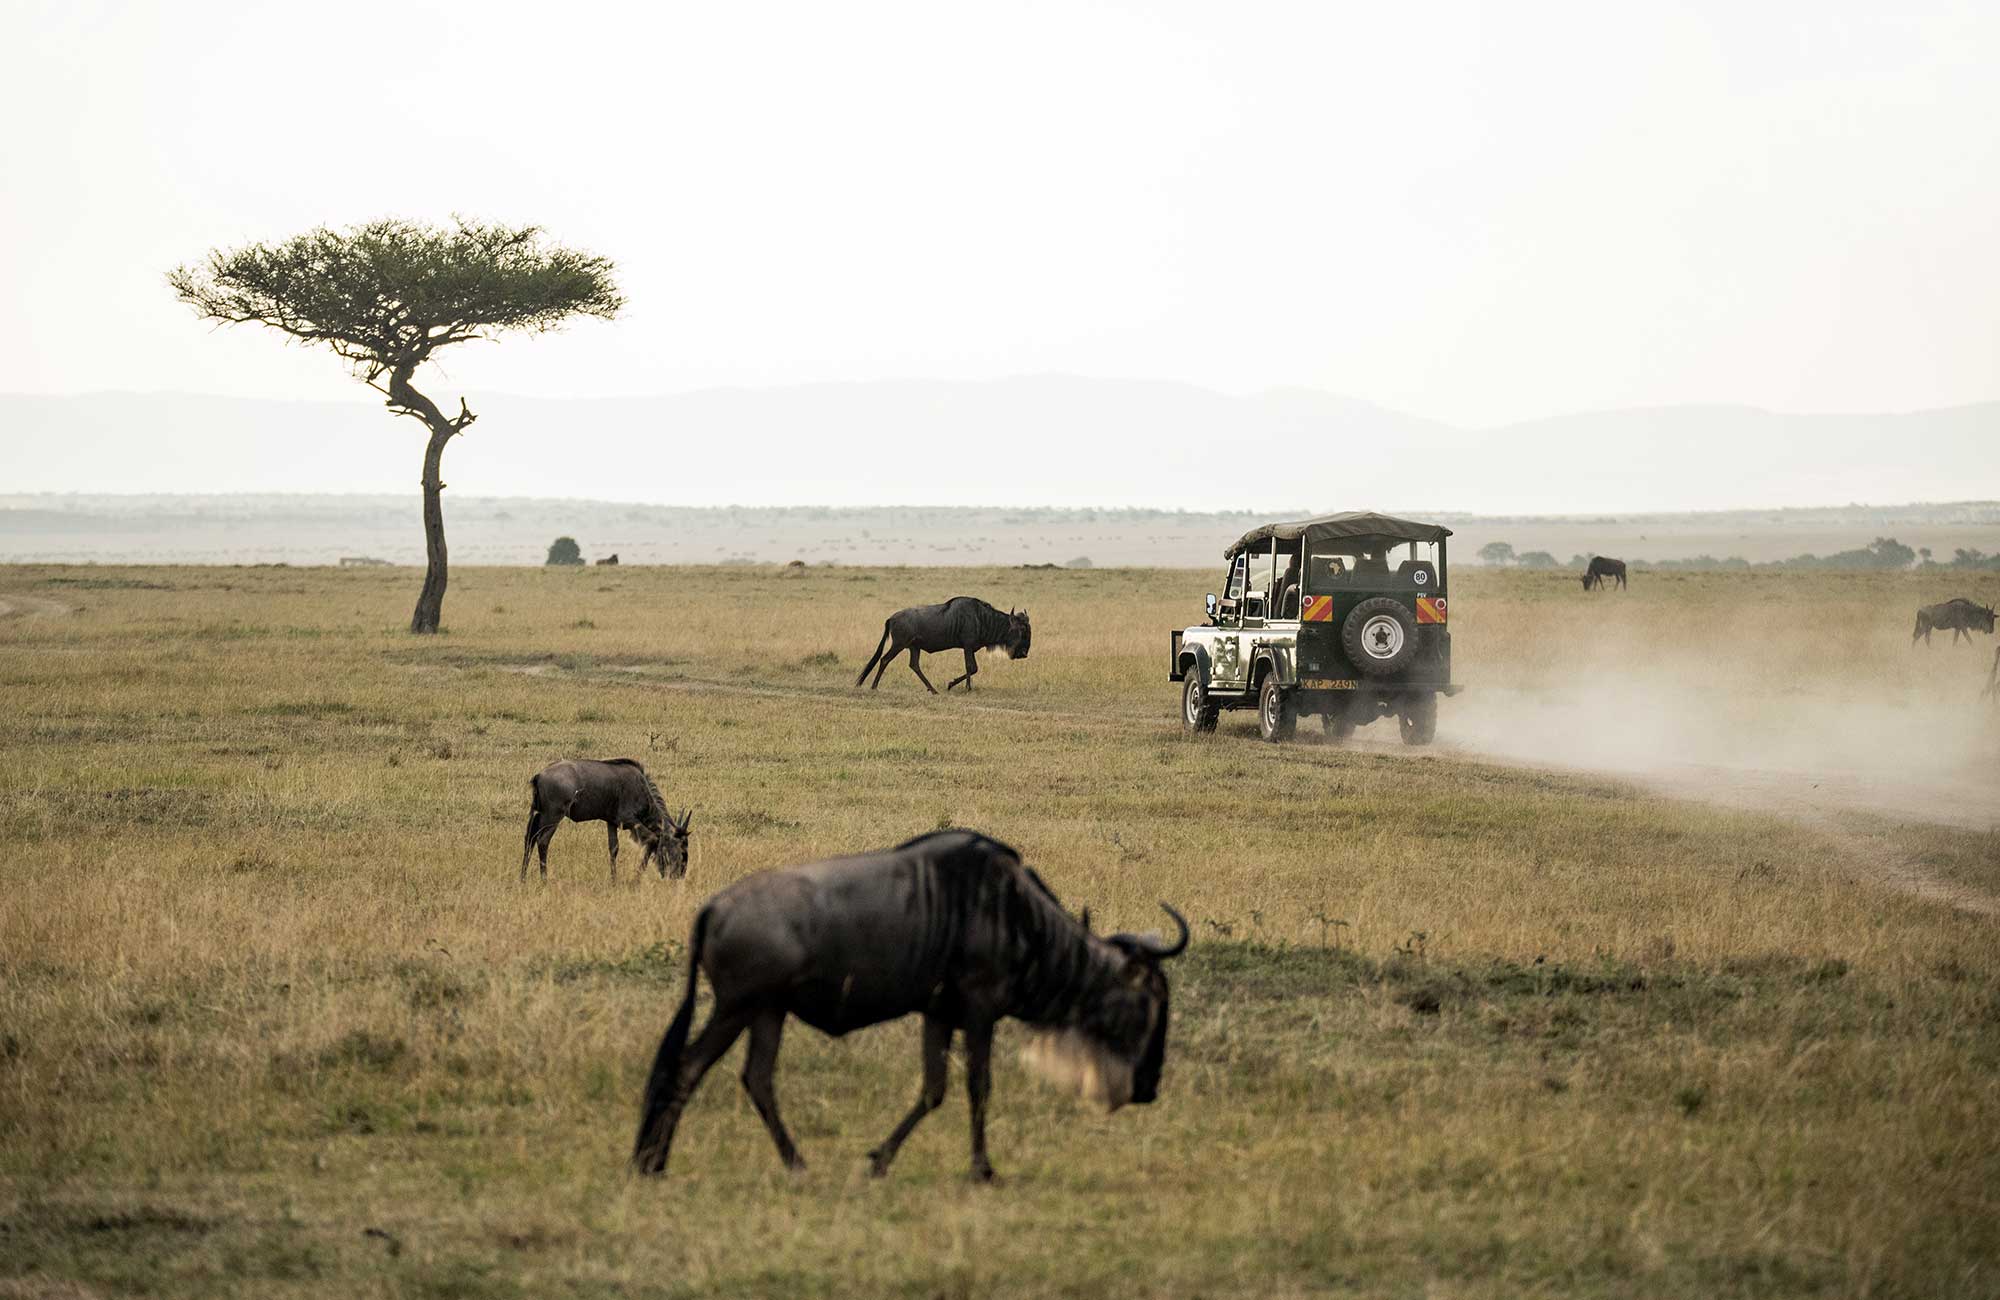 En jeep kör över savannen med bufflar som sällskap.